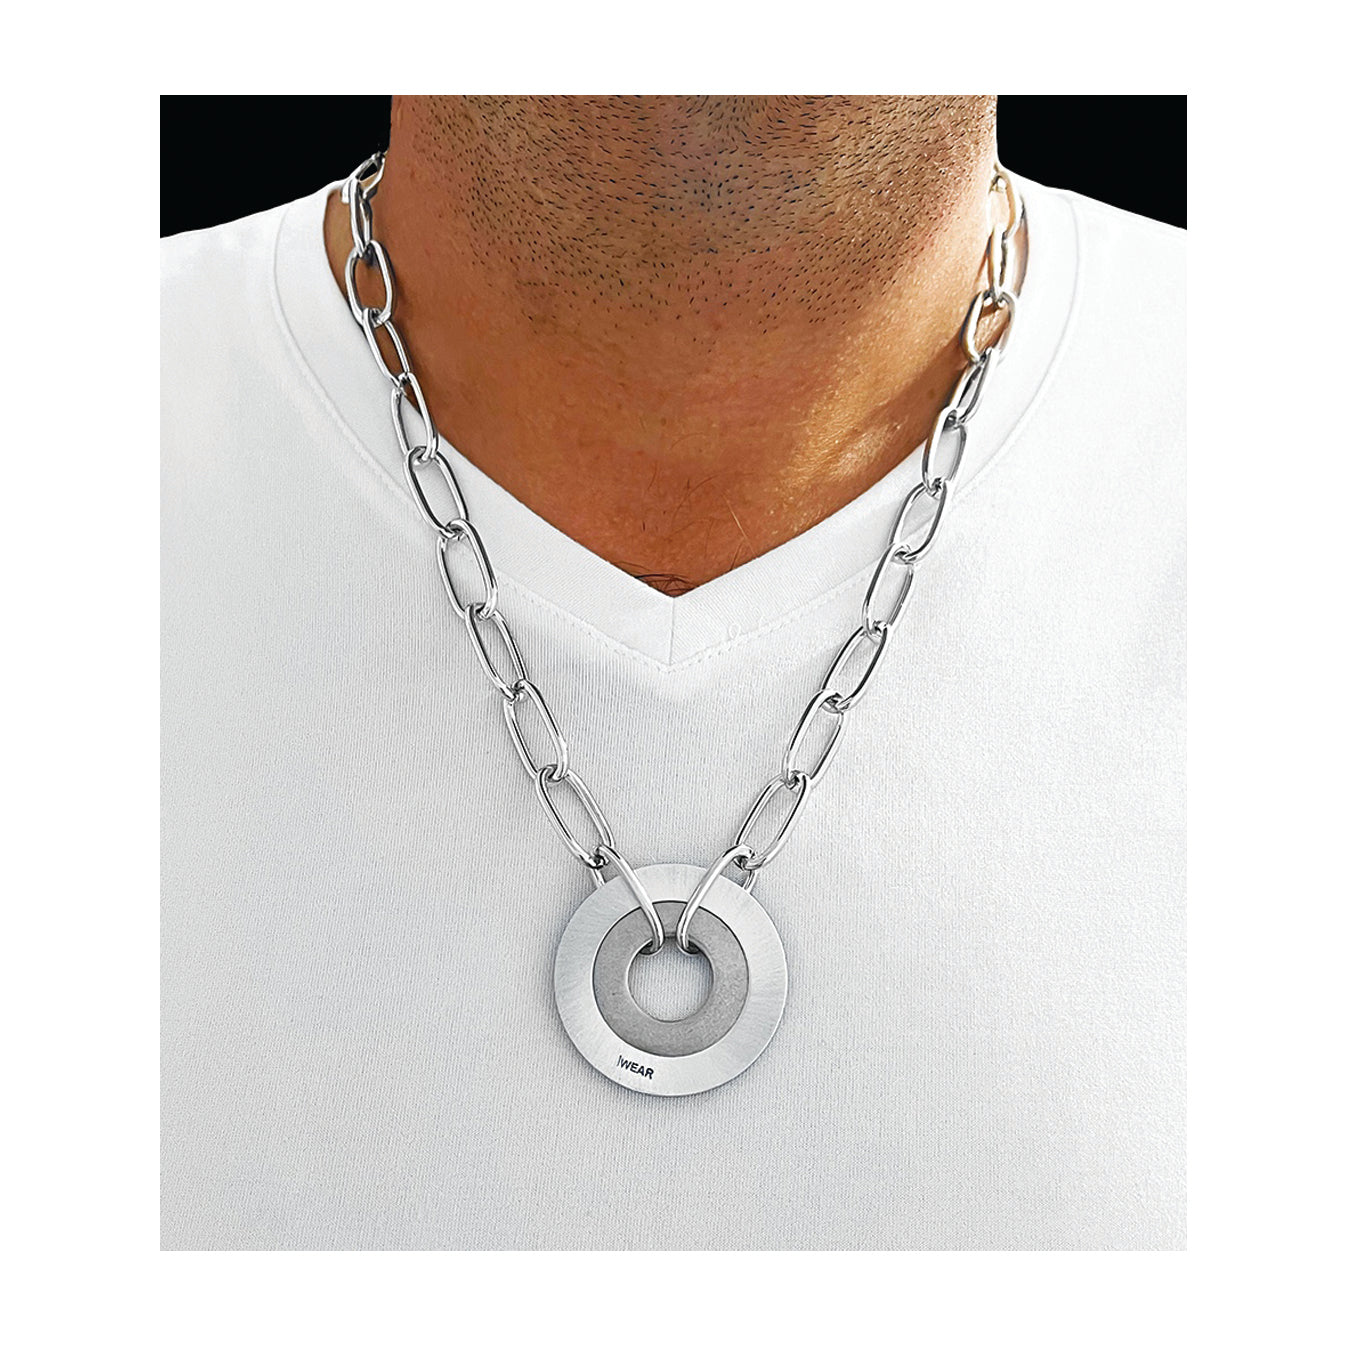 large iWEAR pendant necklace - aluminum